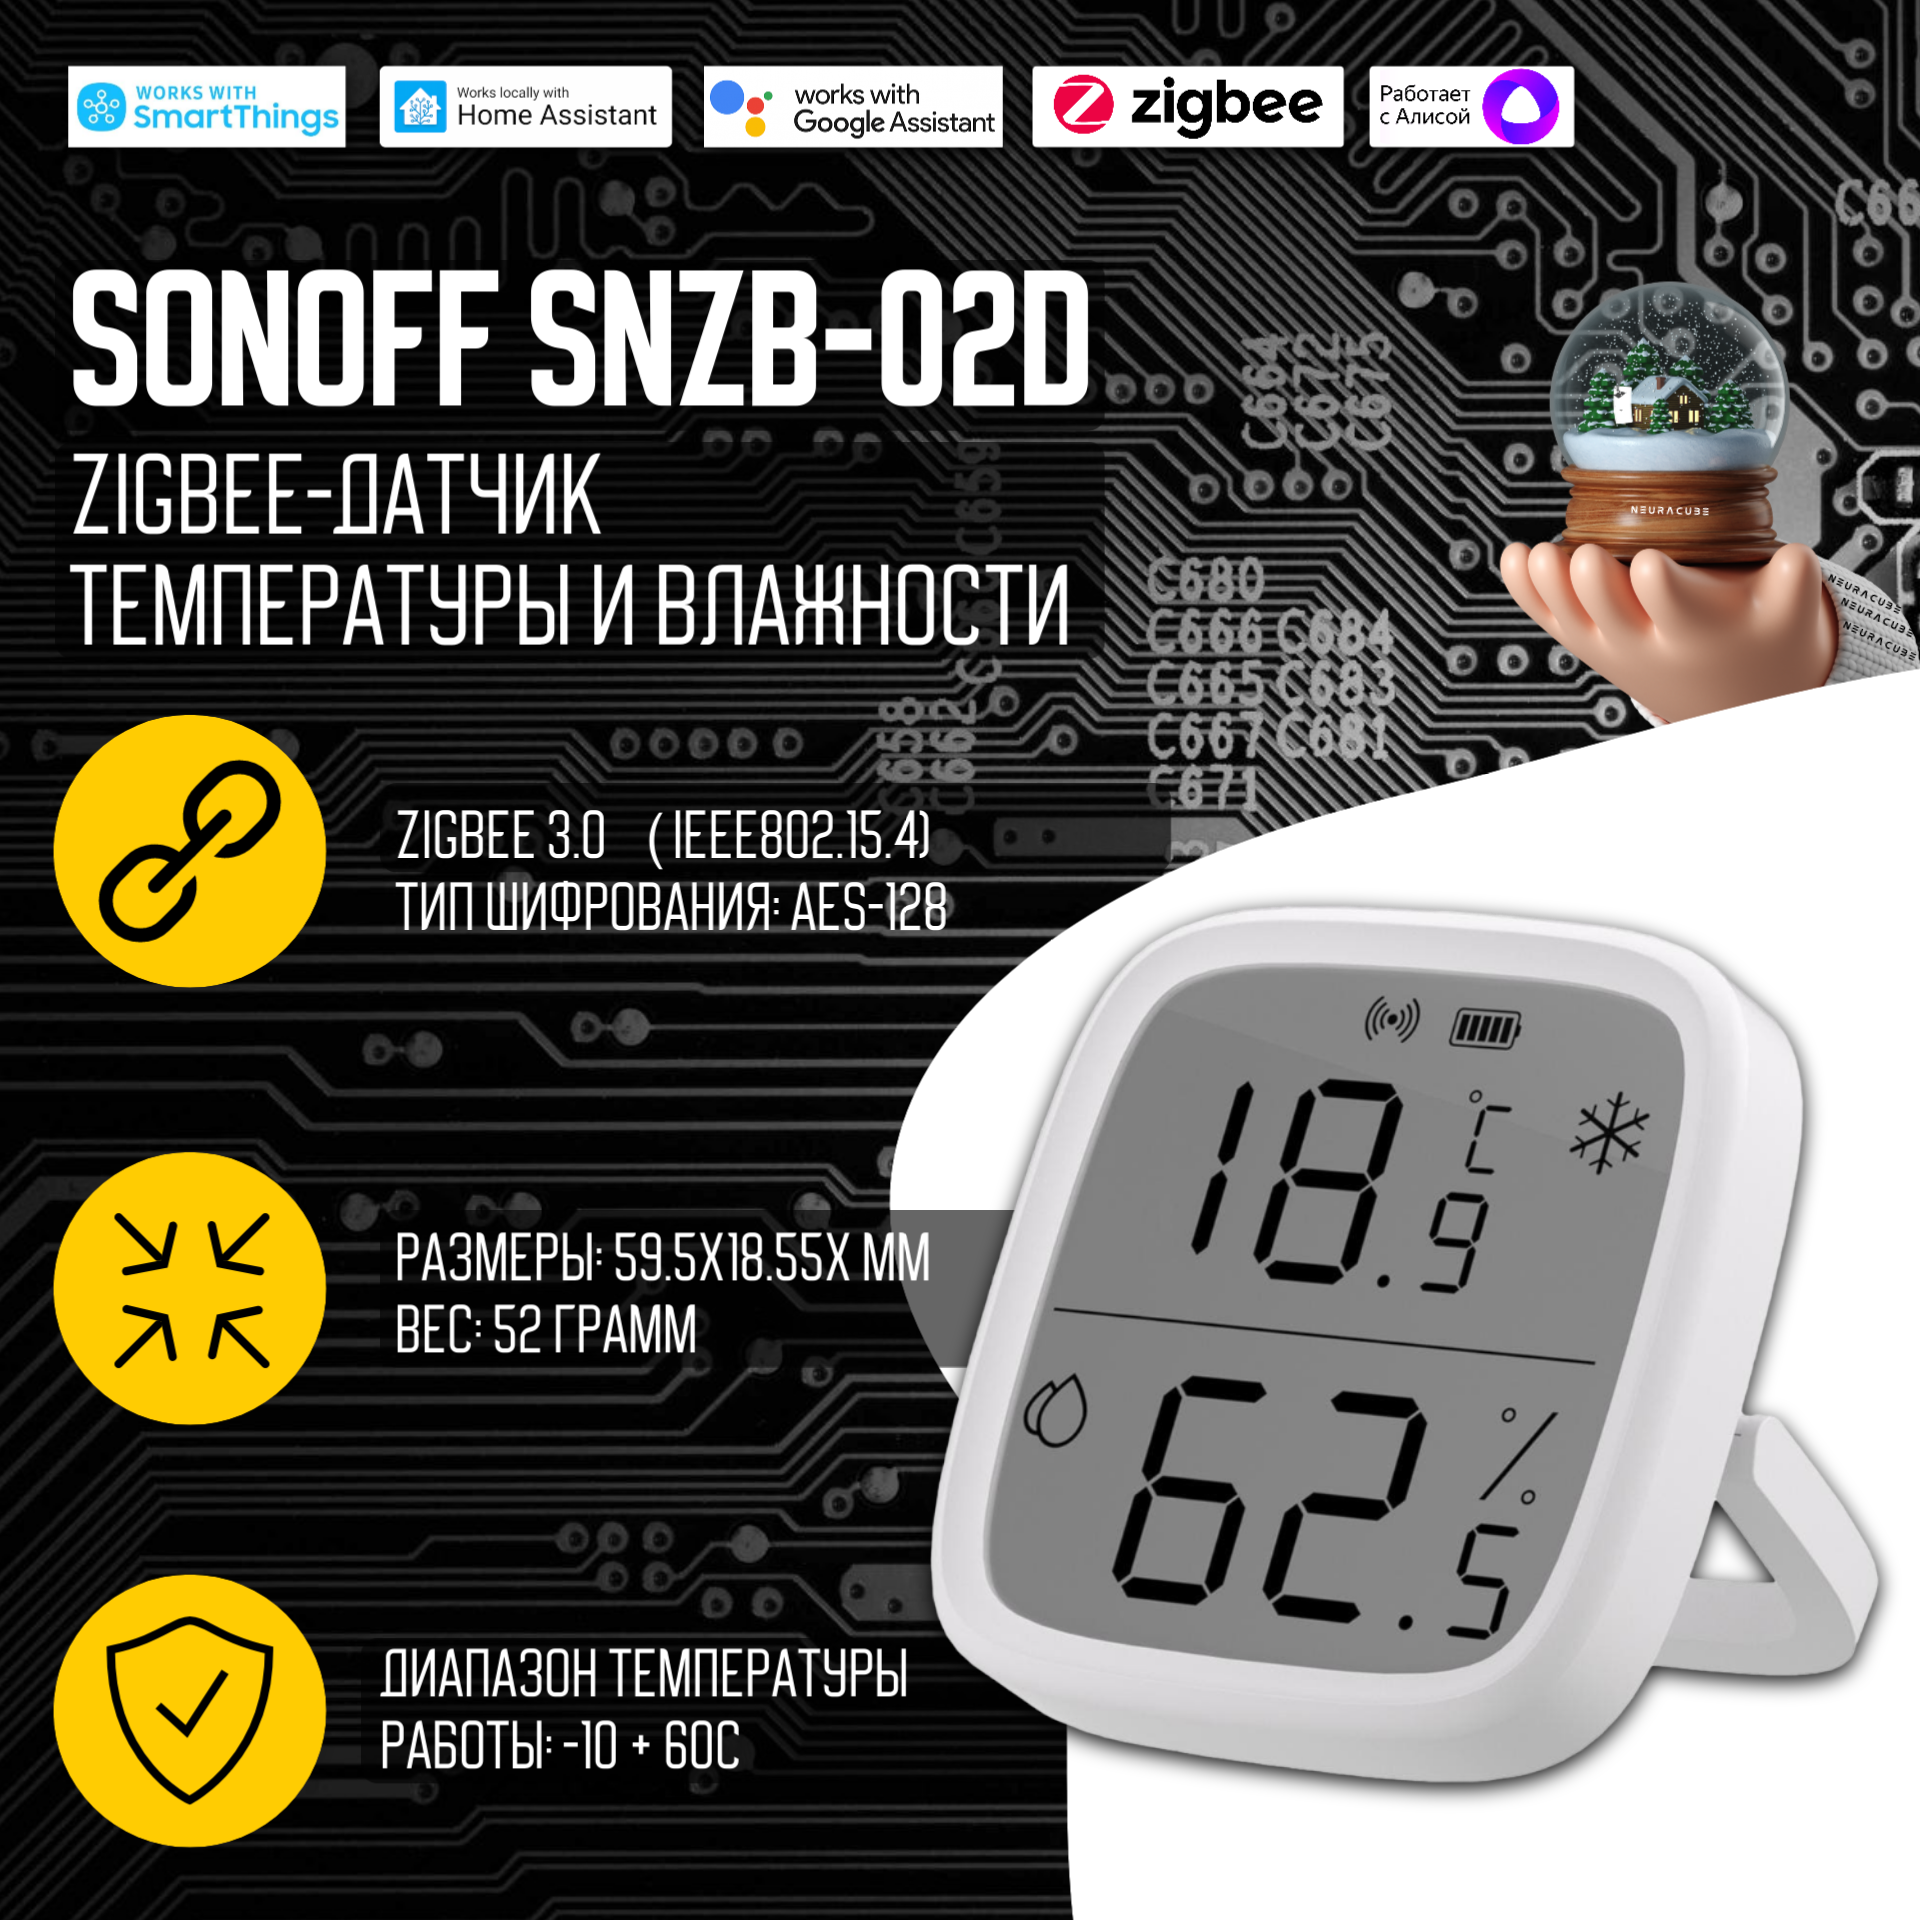 Датчик температуры и влажности SONOFF SNZB-02D - ZigBee (c дисплеем)